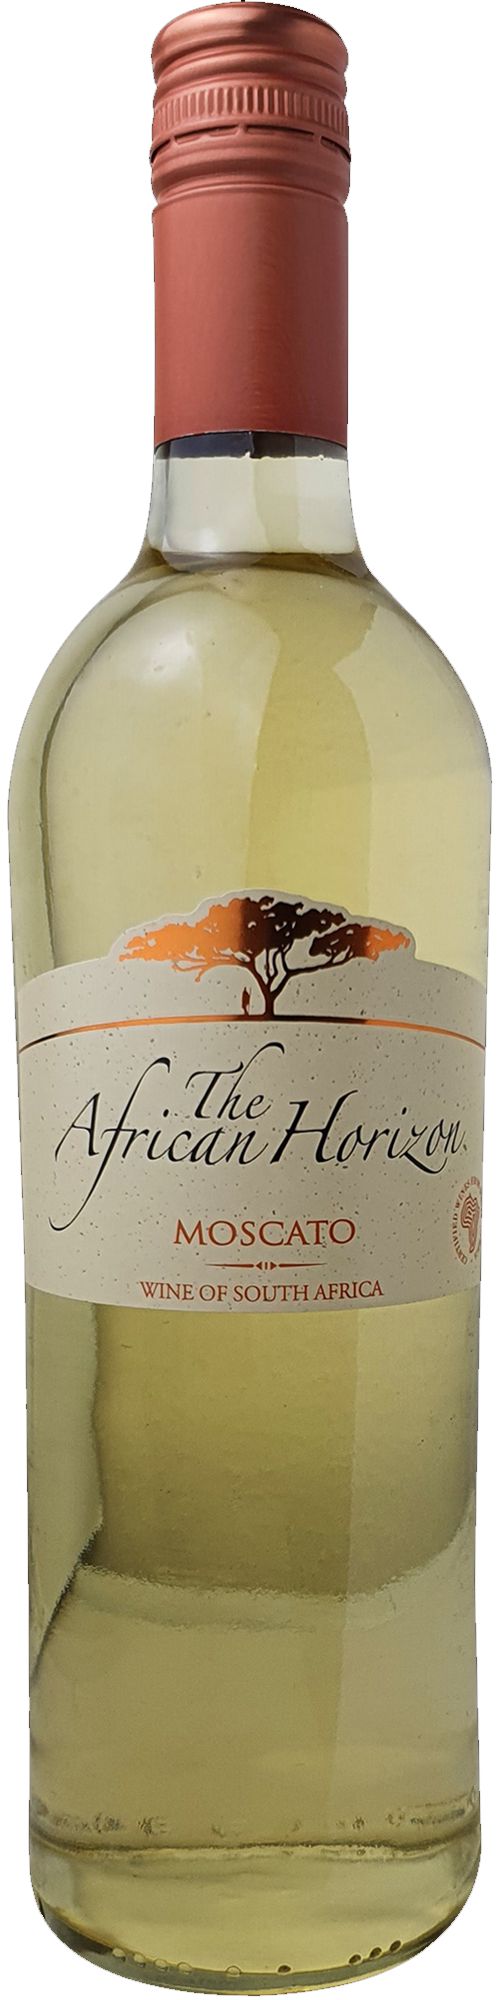 African Horizon Moscato Sweet Weißwein lieblich